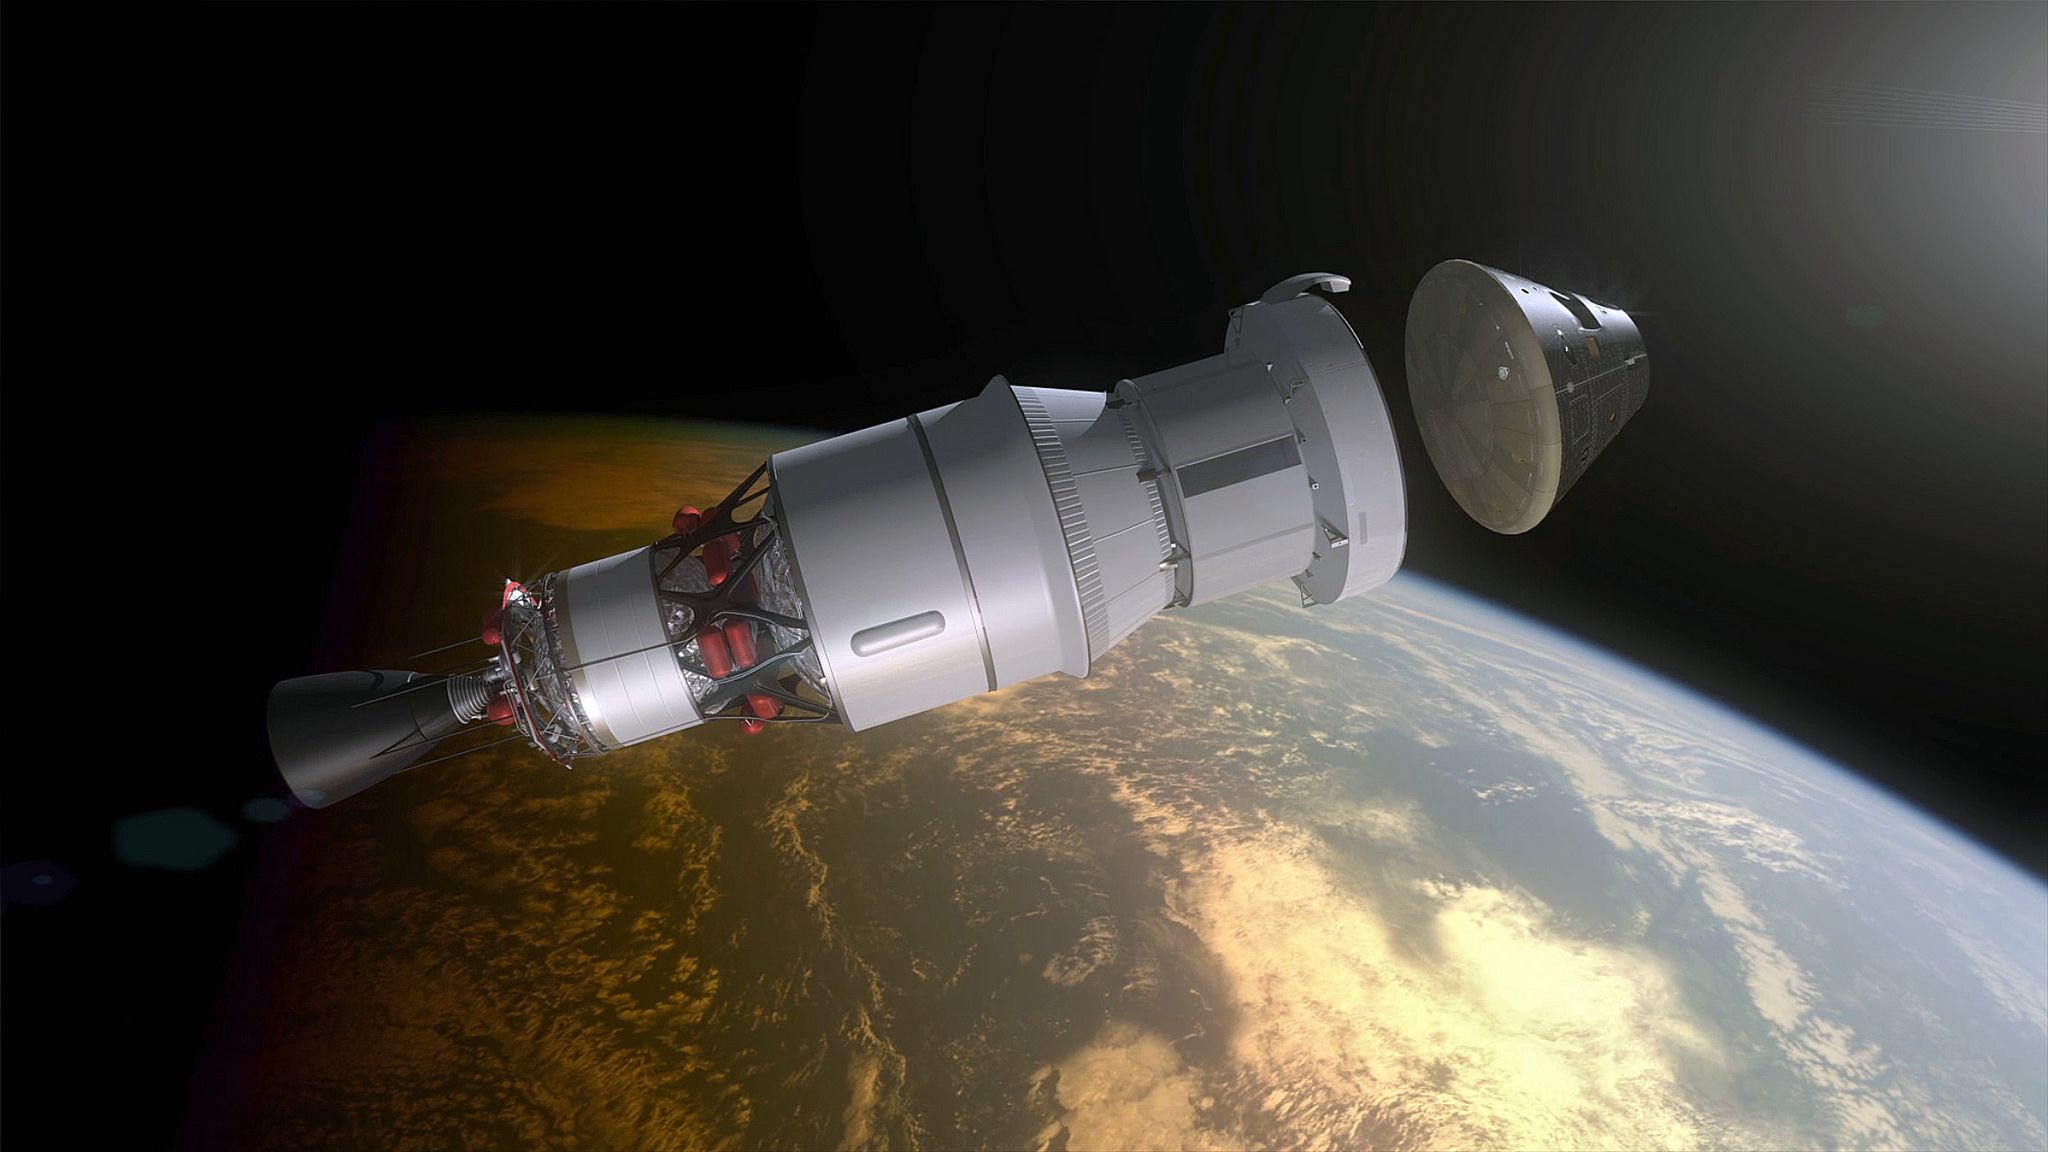 Vue d'artiste de la séparation d'Orion de son module de service et de l'étage supérieur de la fusée (Source : https://www.flickr.com/photos/nasaorion)